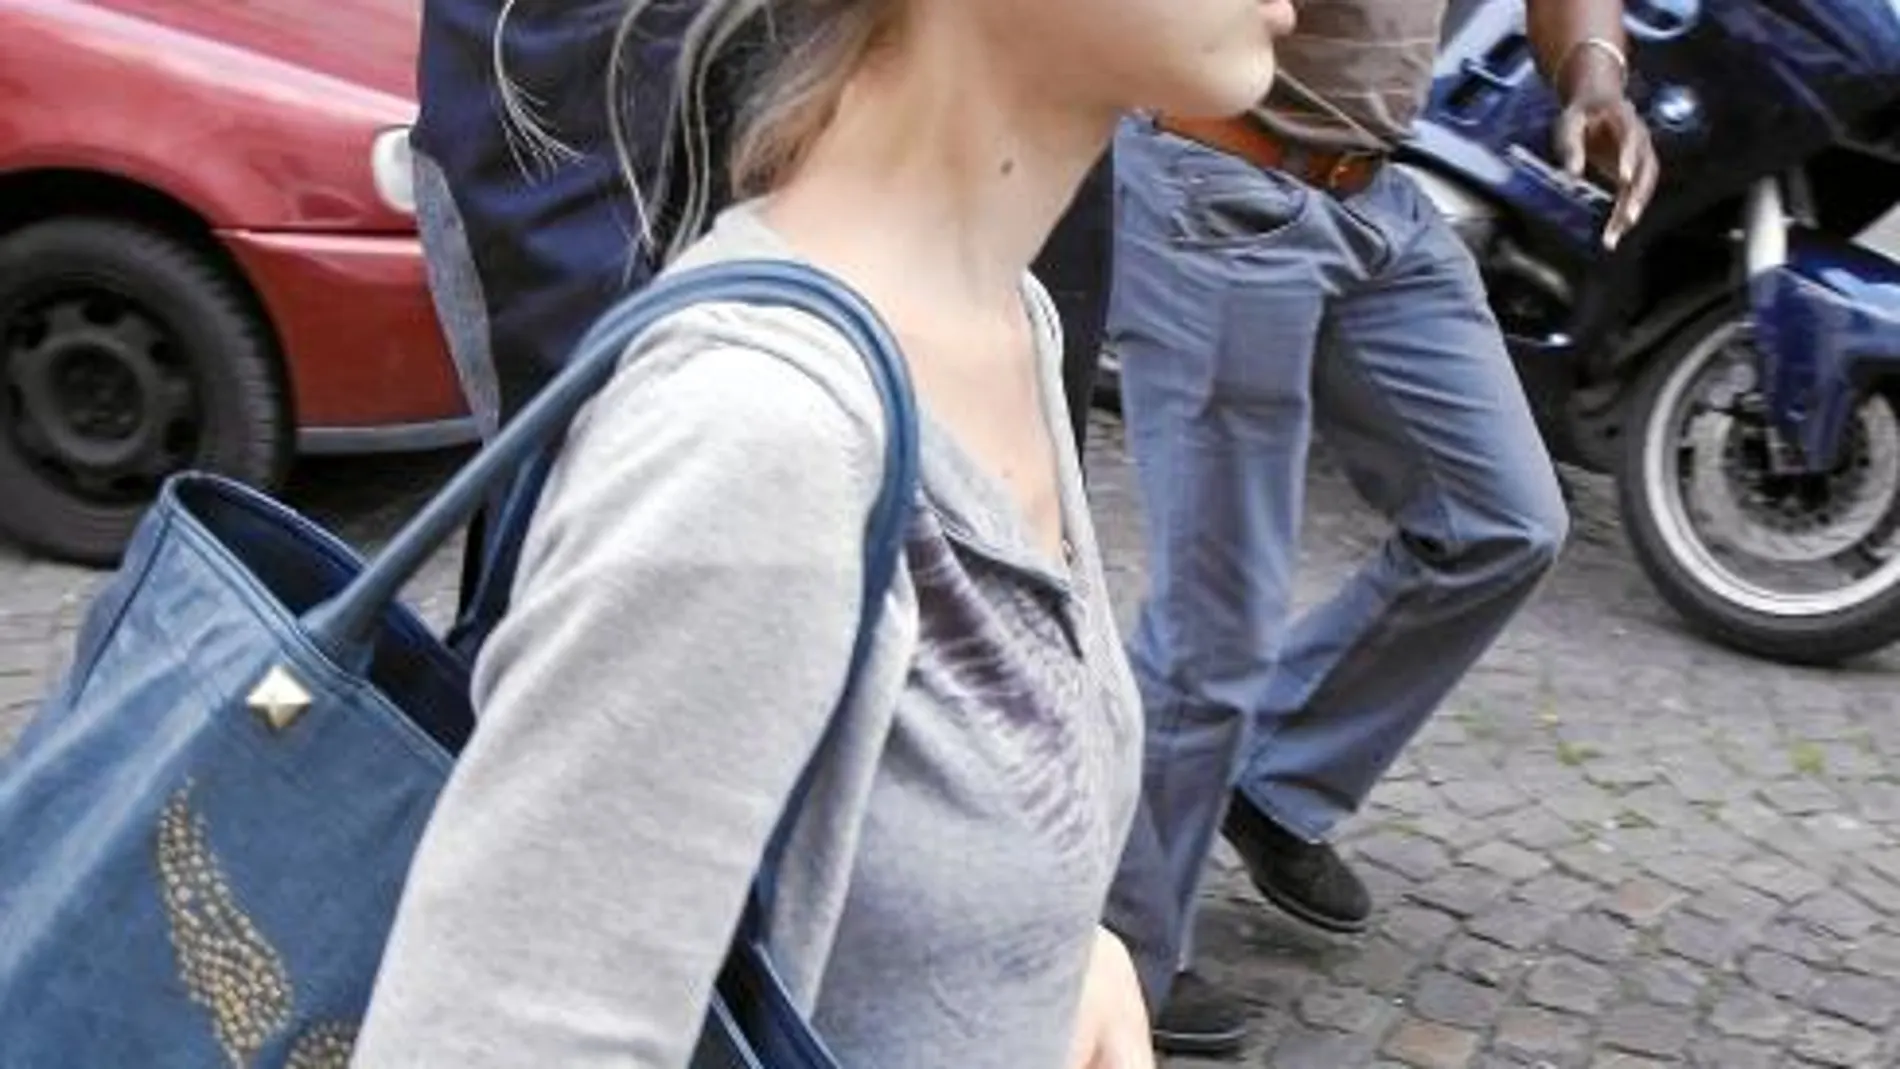 La periodista Tristane Banon interpuso ayer en la Fiscalía de París la demanda contra Strauss-Kahn por intento de violación.